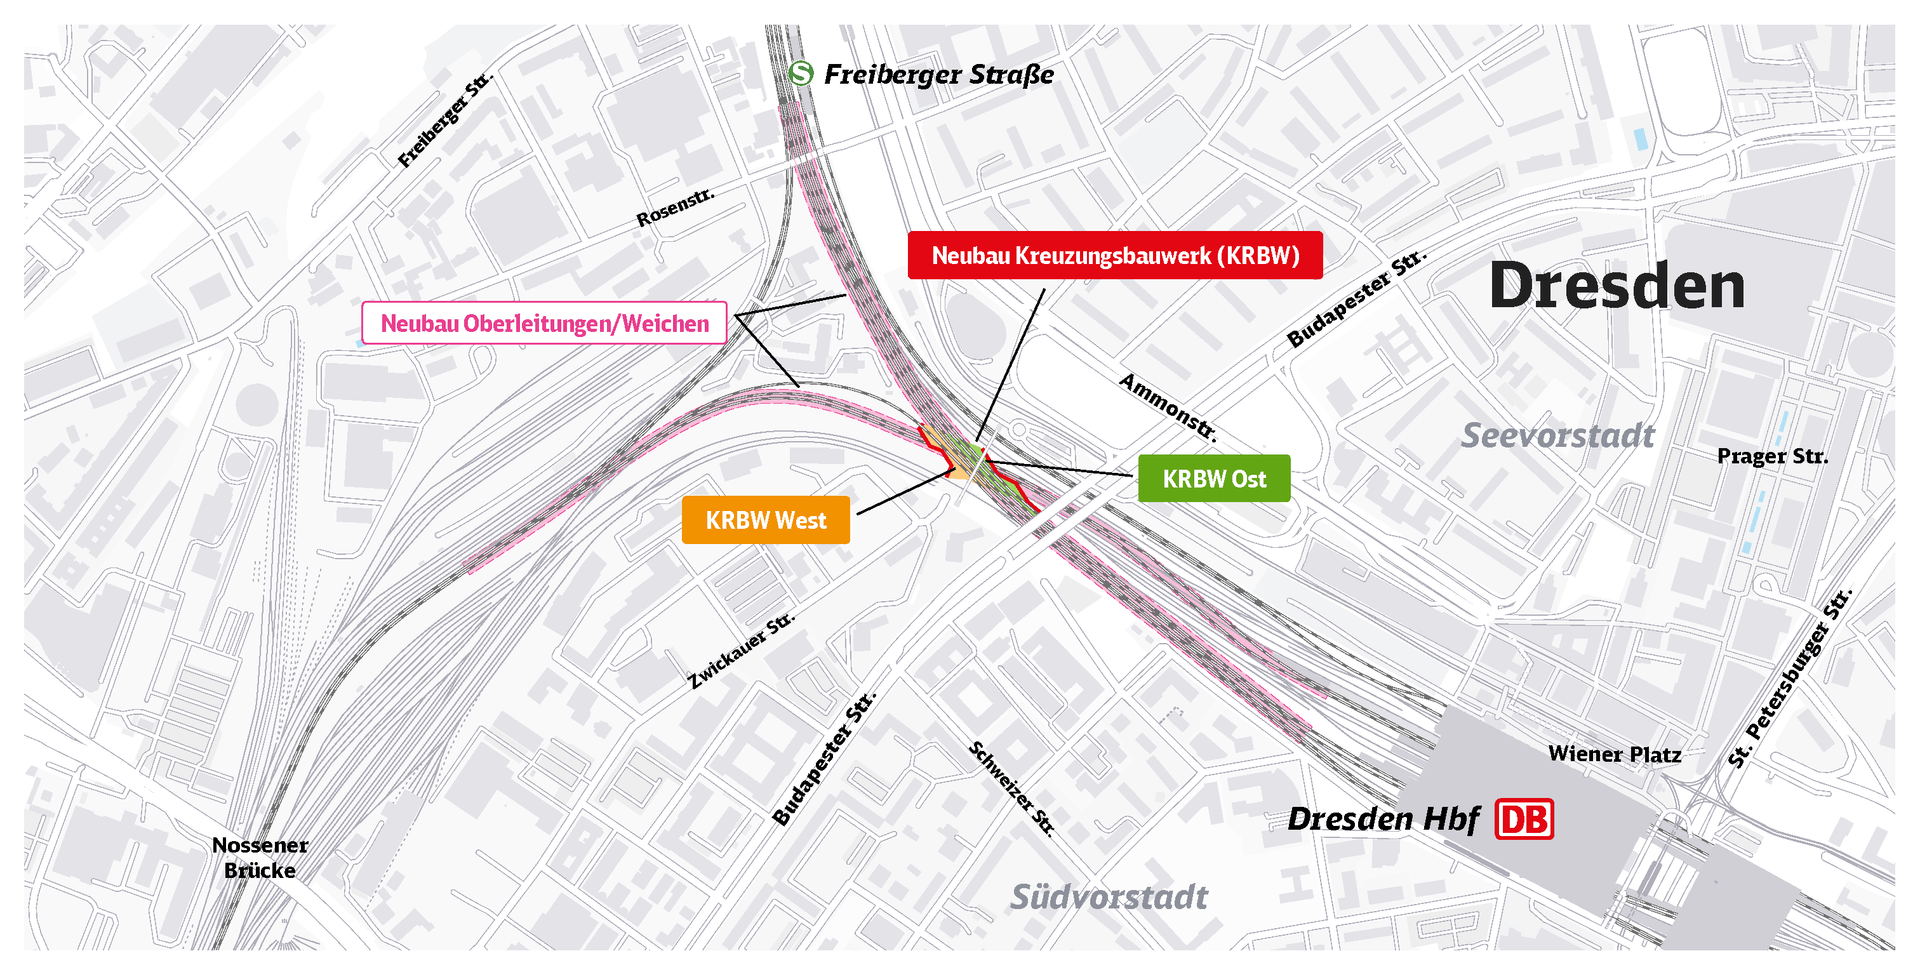 Das neue Kreuzungsbauwerk soll die Züge in Dresden schneller machen.